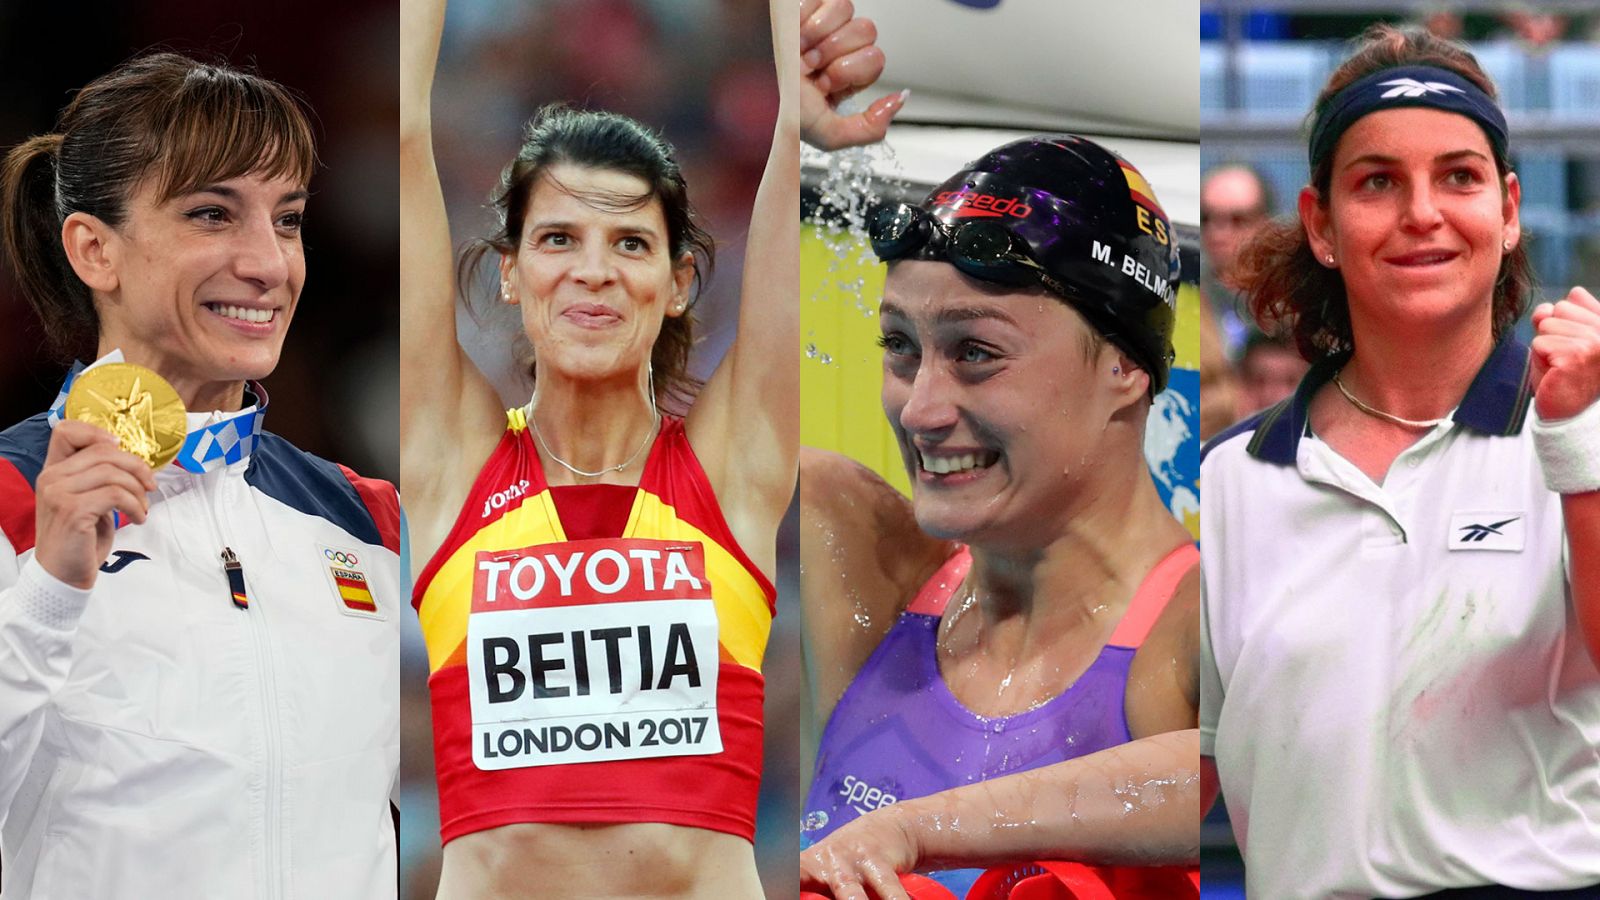 Día de la mujer: 14 mujeres que destacaron en sus deportes